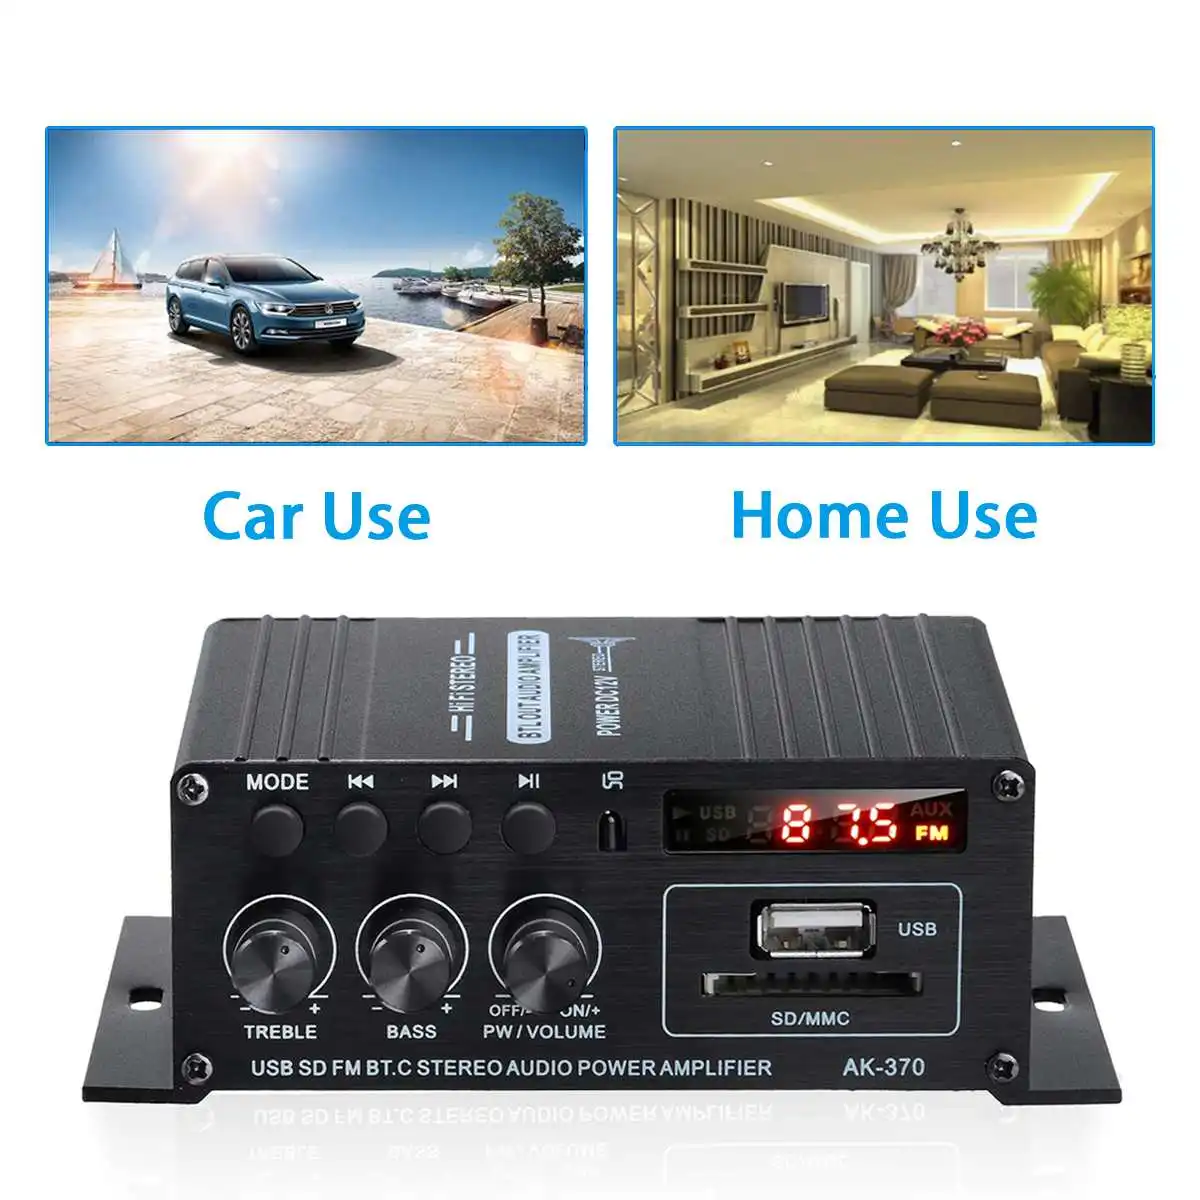 Домашние цифровые Усилители звука 800 Вт 12 В 110-240 усилитель басов аудио bluetooth Hi-Fi FM